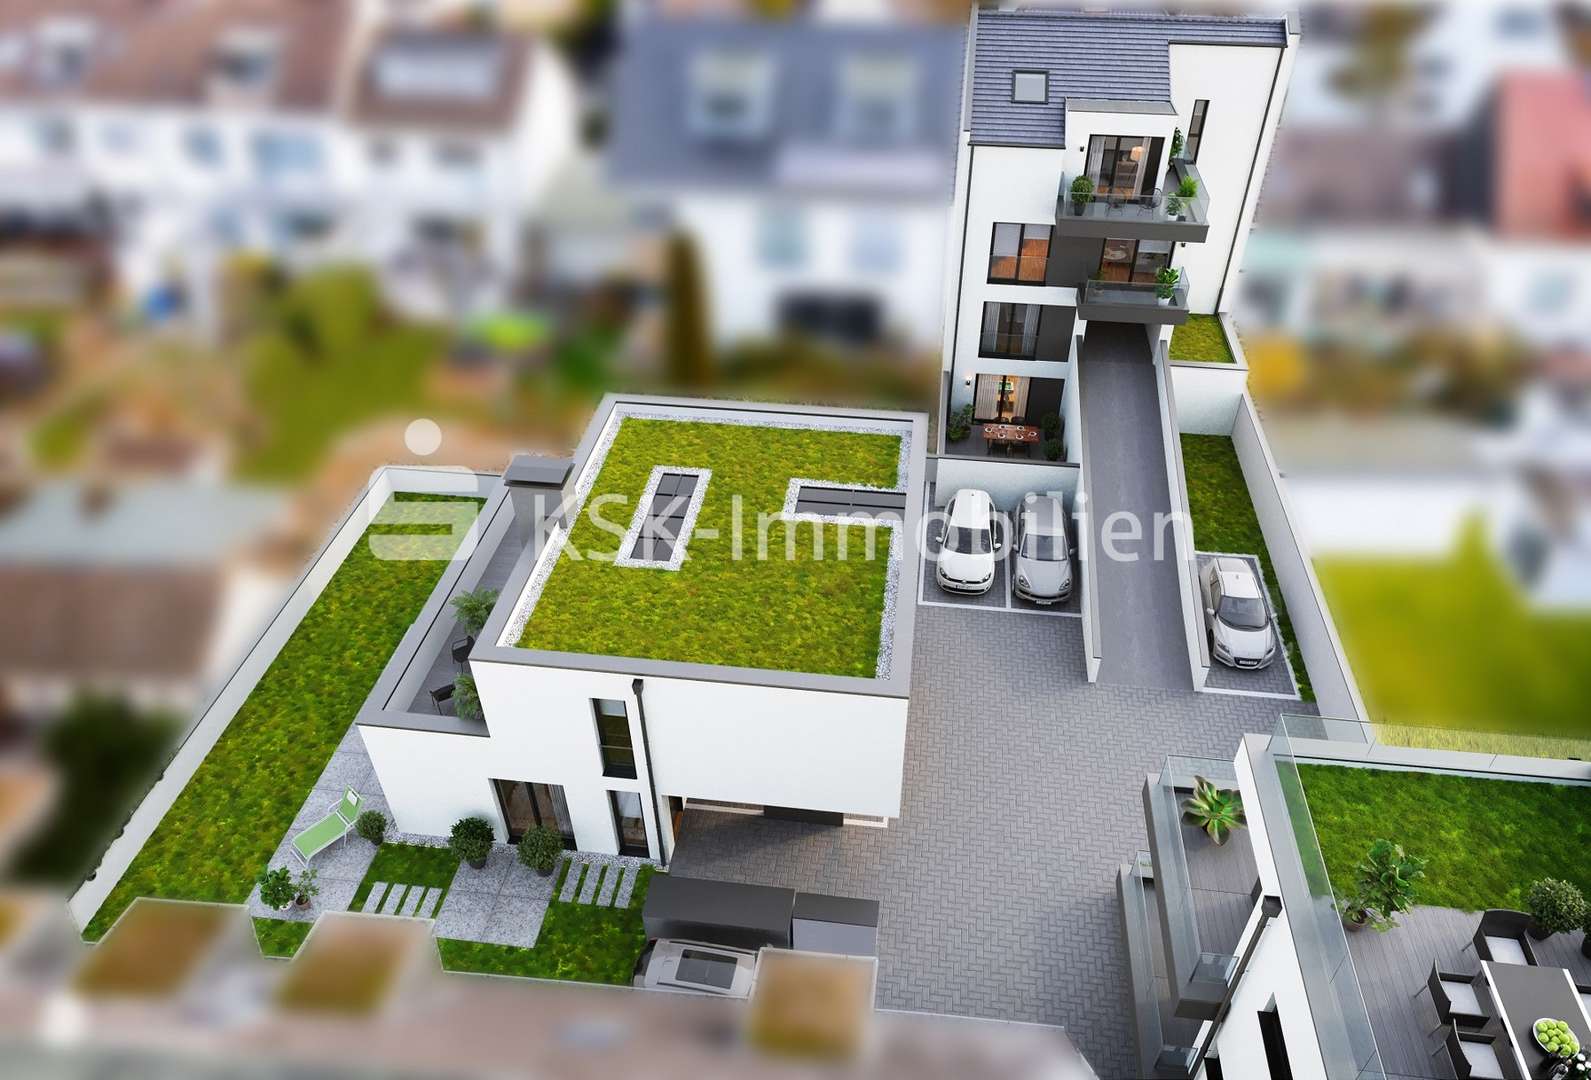 Birdview - Einfamilienhaus in 53604 Bad Honnef mit 156m² kaufen